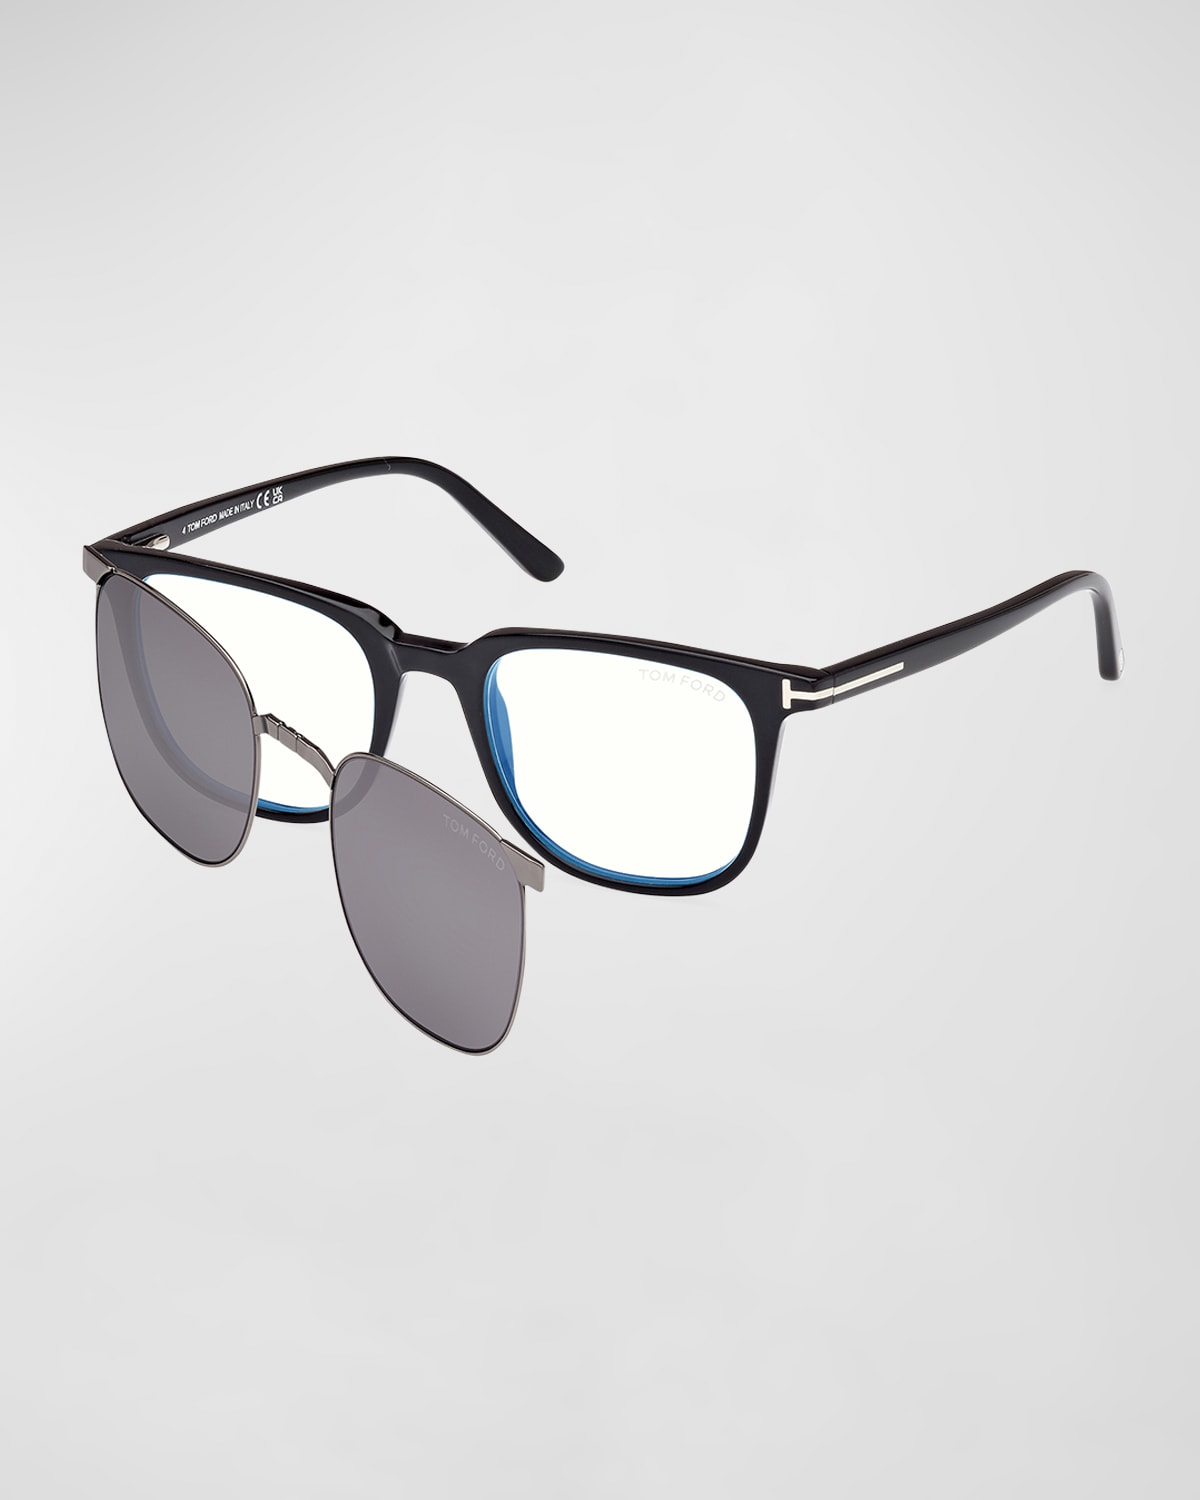 Men's Square Blue Light Blocking Glasses with Clip-On Lenses